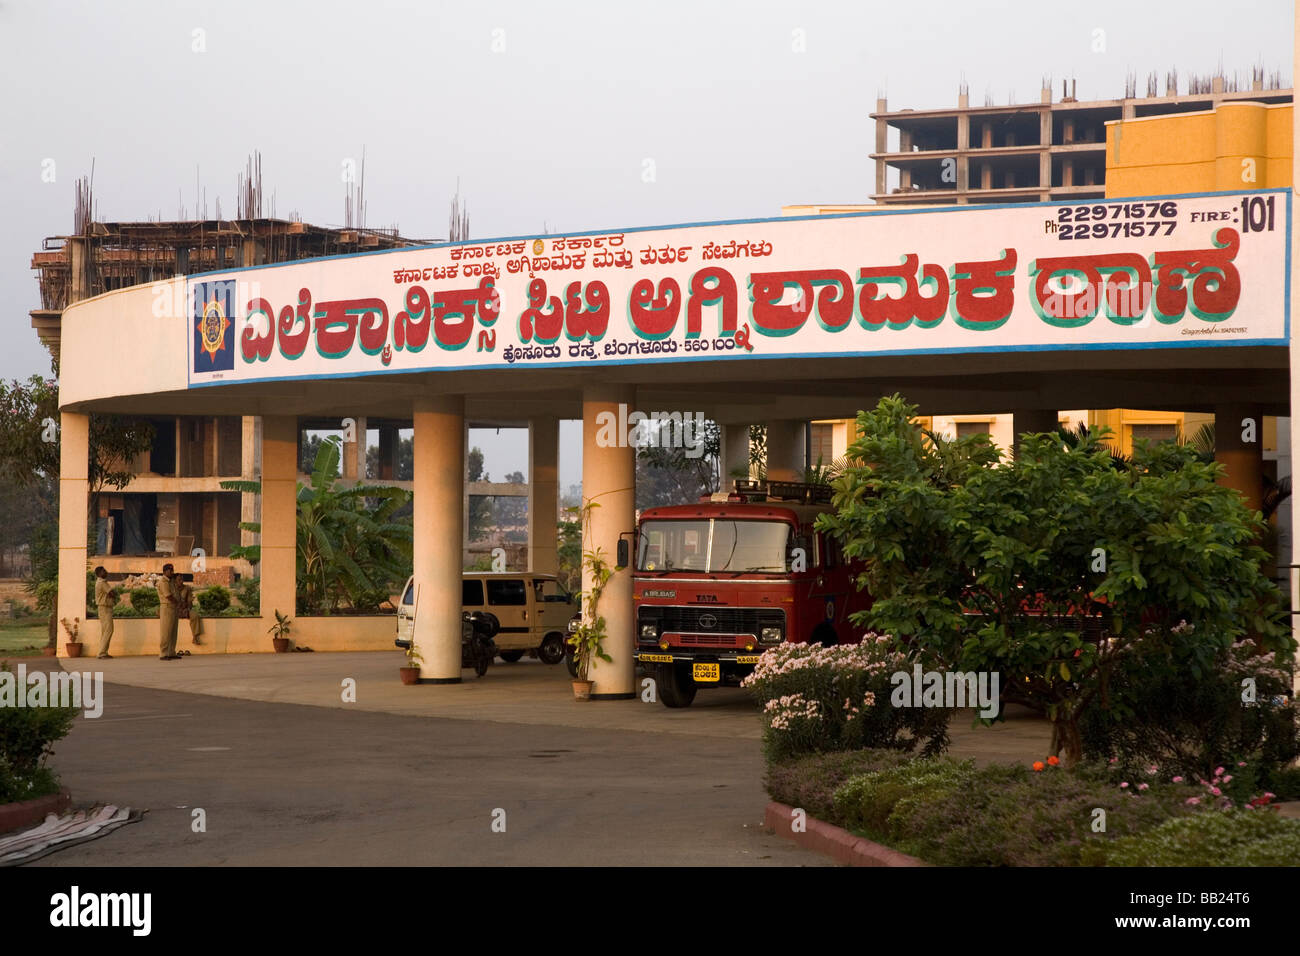 Le poste d'incendie à l'intérieur de Electronics City, une banlieue de Bangalore, en Inde. Banque D'Images